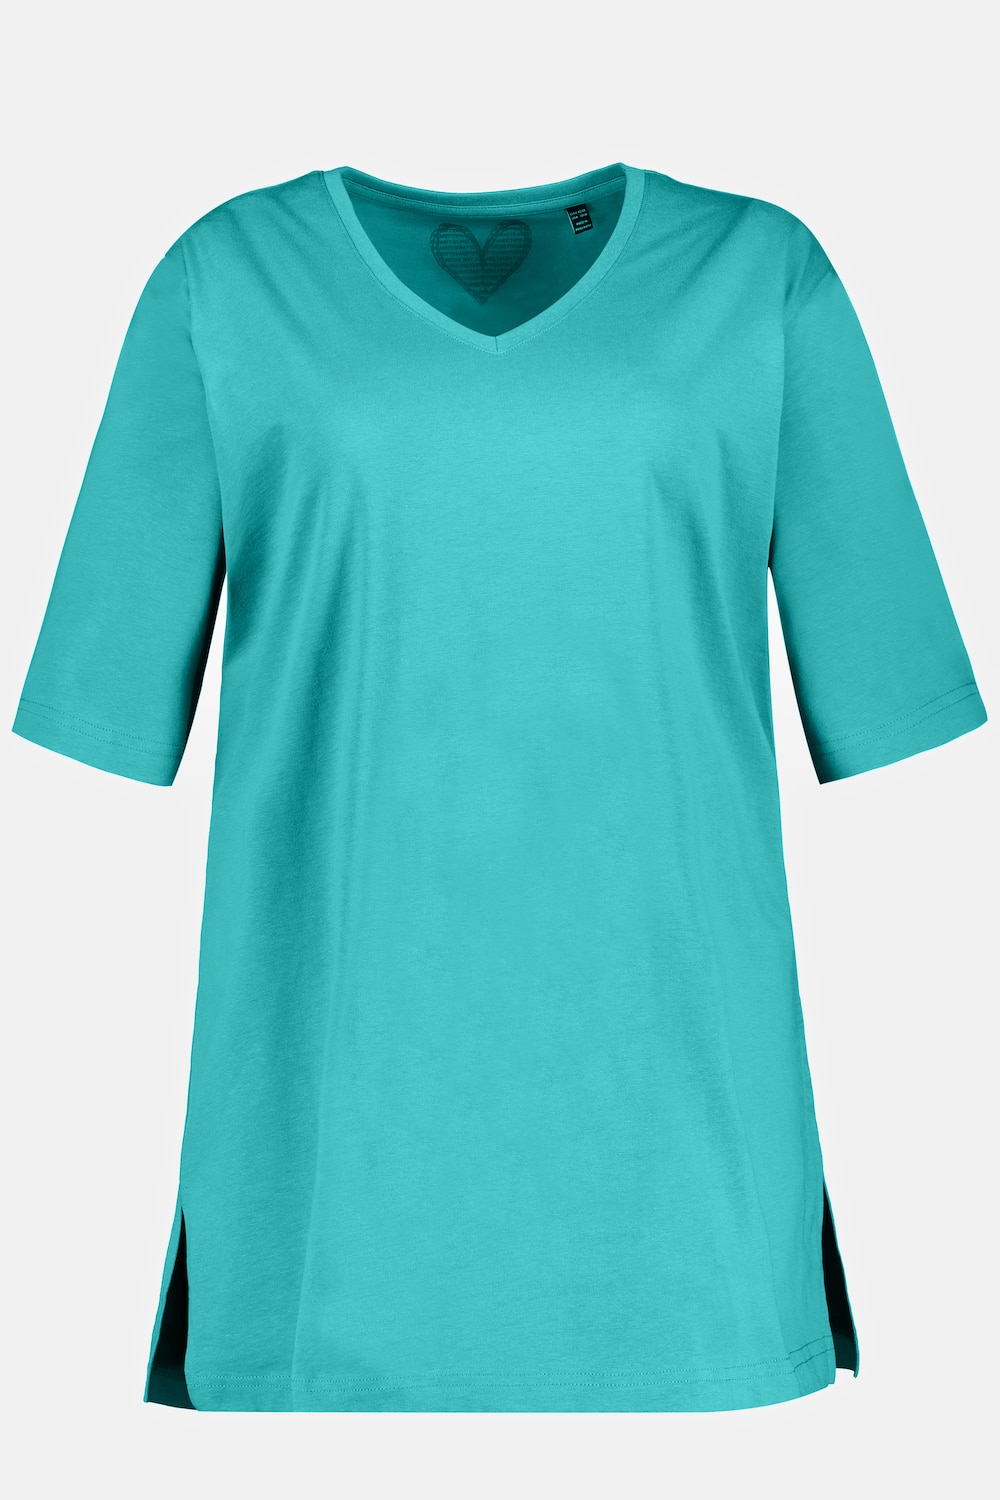 Grote Maten T-shirt, Dames, turquoise, Maat: 66/68, Ulla Popken